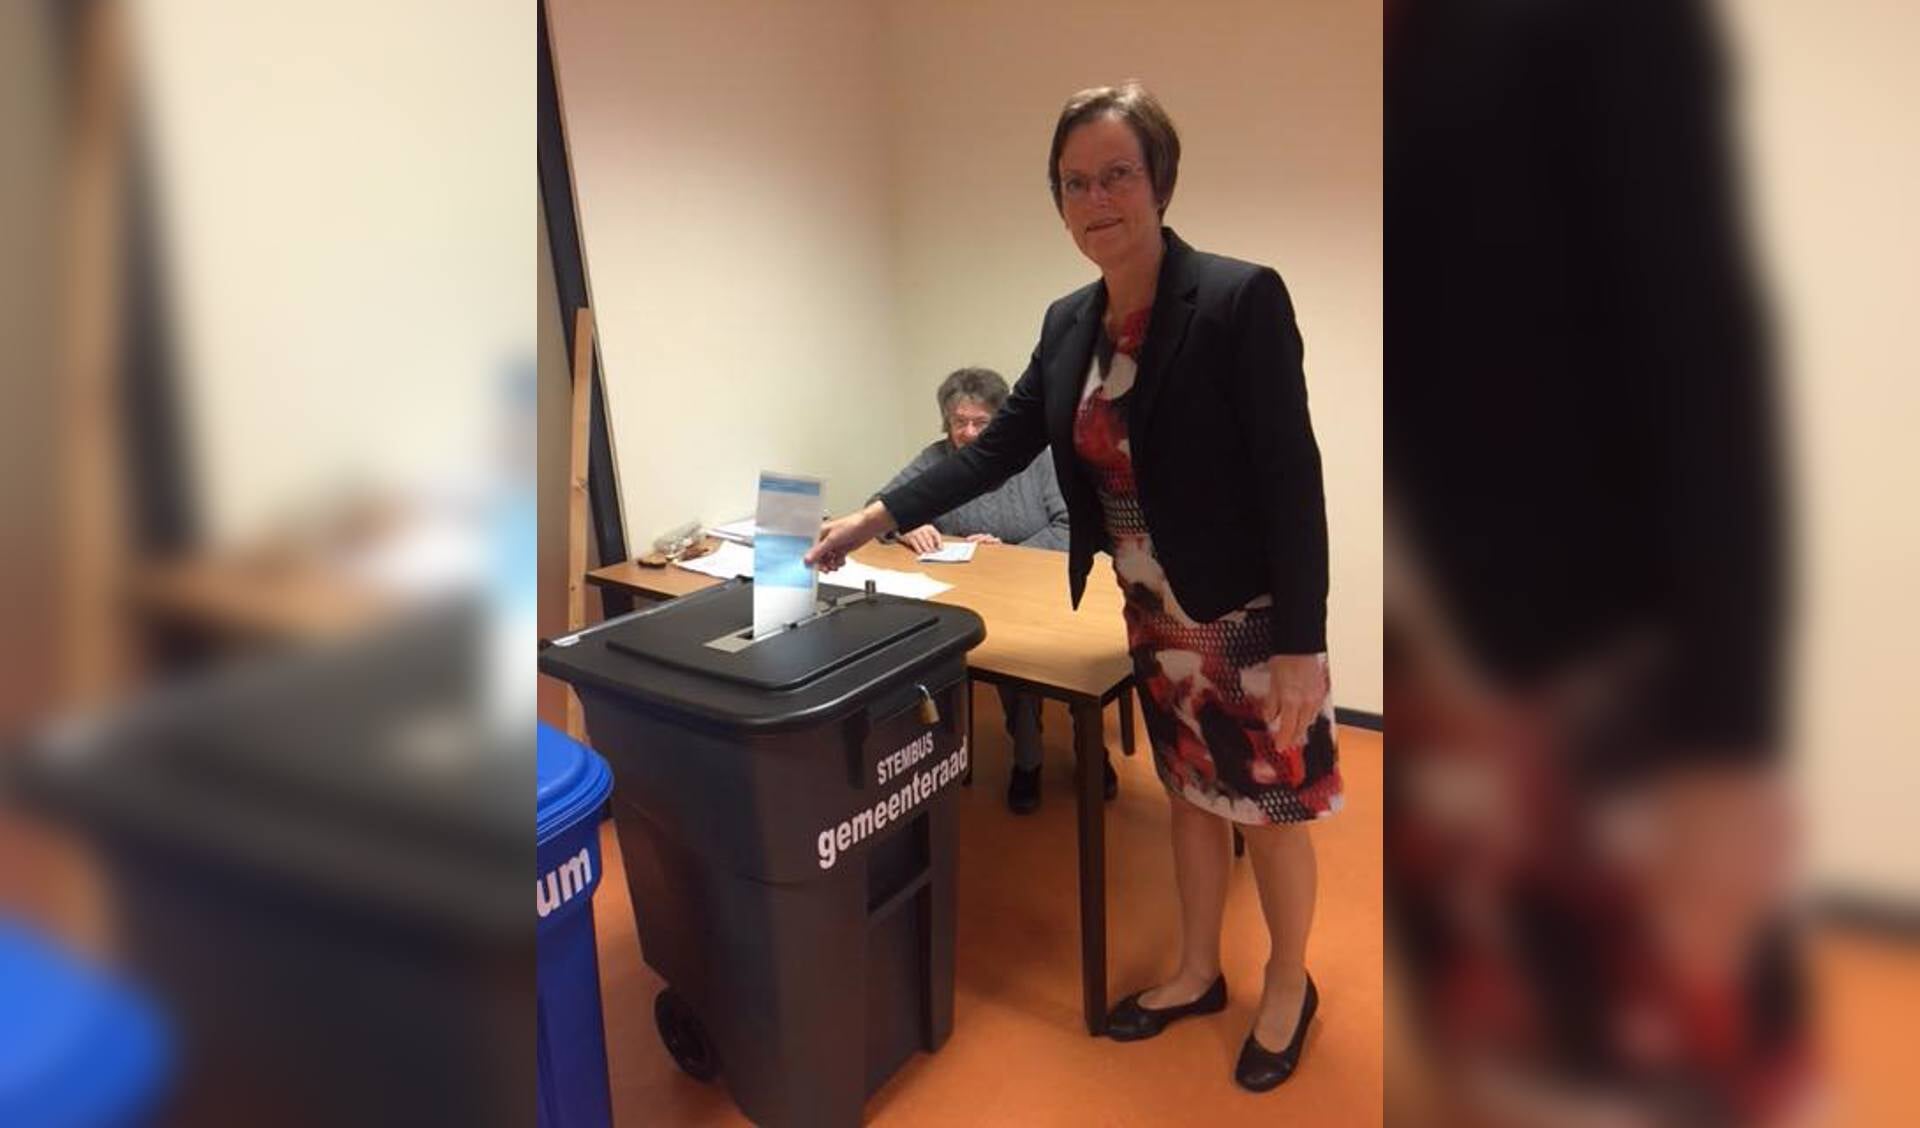 Burgemeester Ger van de Velde heeft haar stem al uitgebracht bij stembureau Dalemhof.